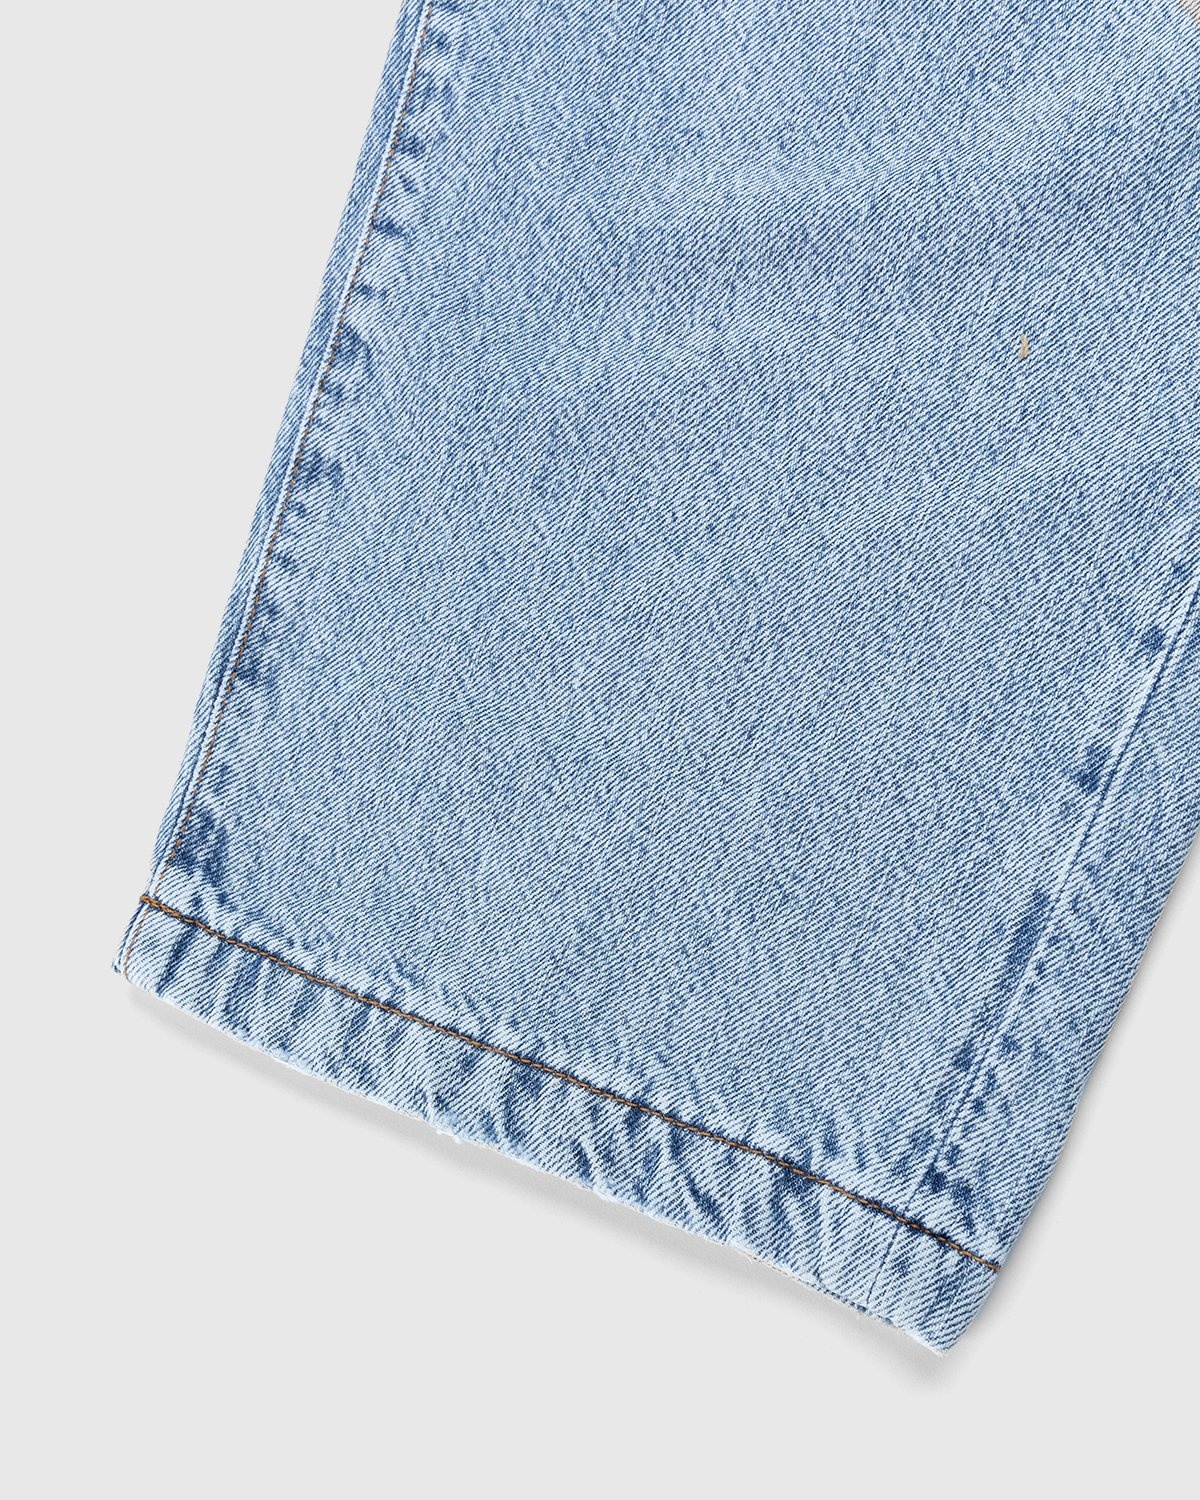 Acne Studios – Loose Fit Jeans Blue - Pants - Blue - Image 4